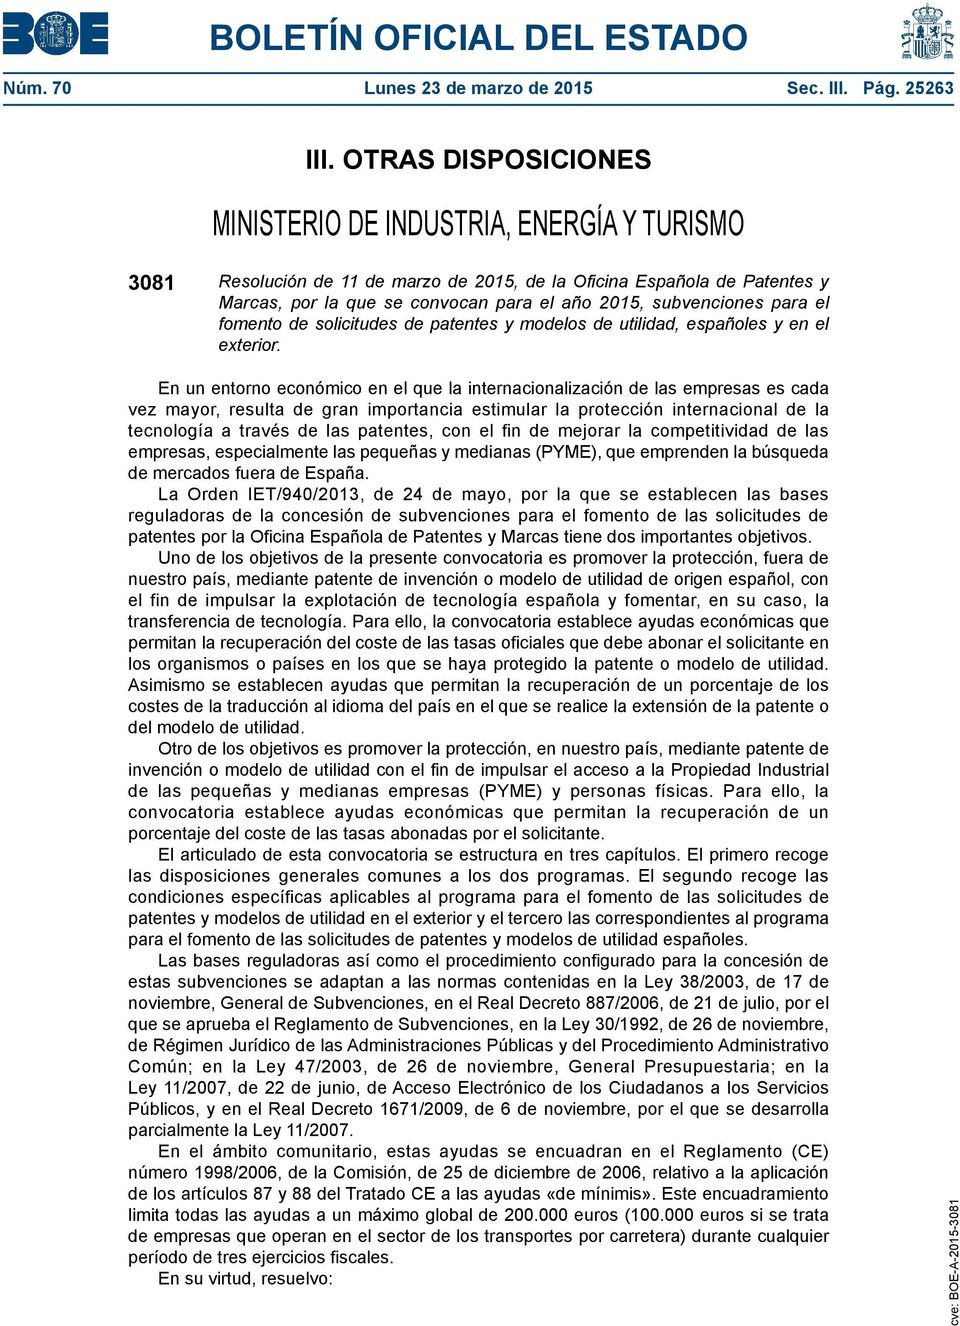 subvenciones para el fomento de solicitudes de patentes y modelos de utilidad, españoles y en el exterior.